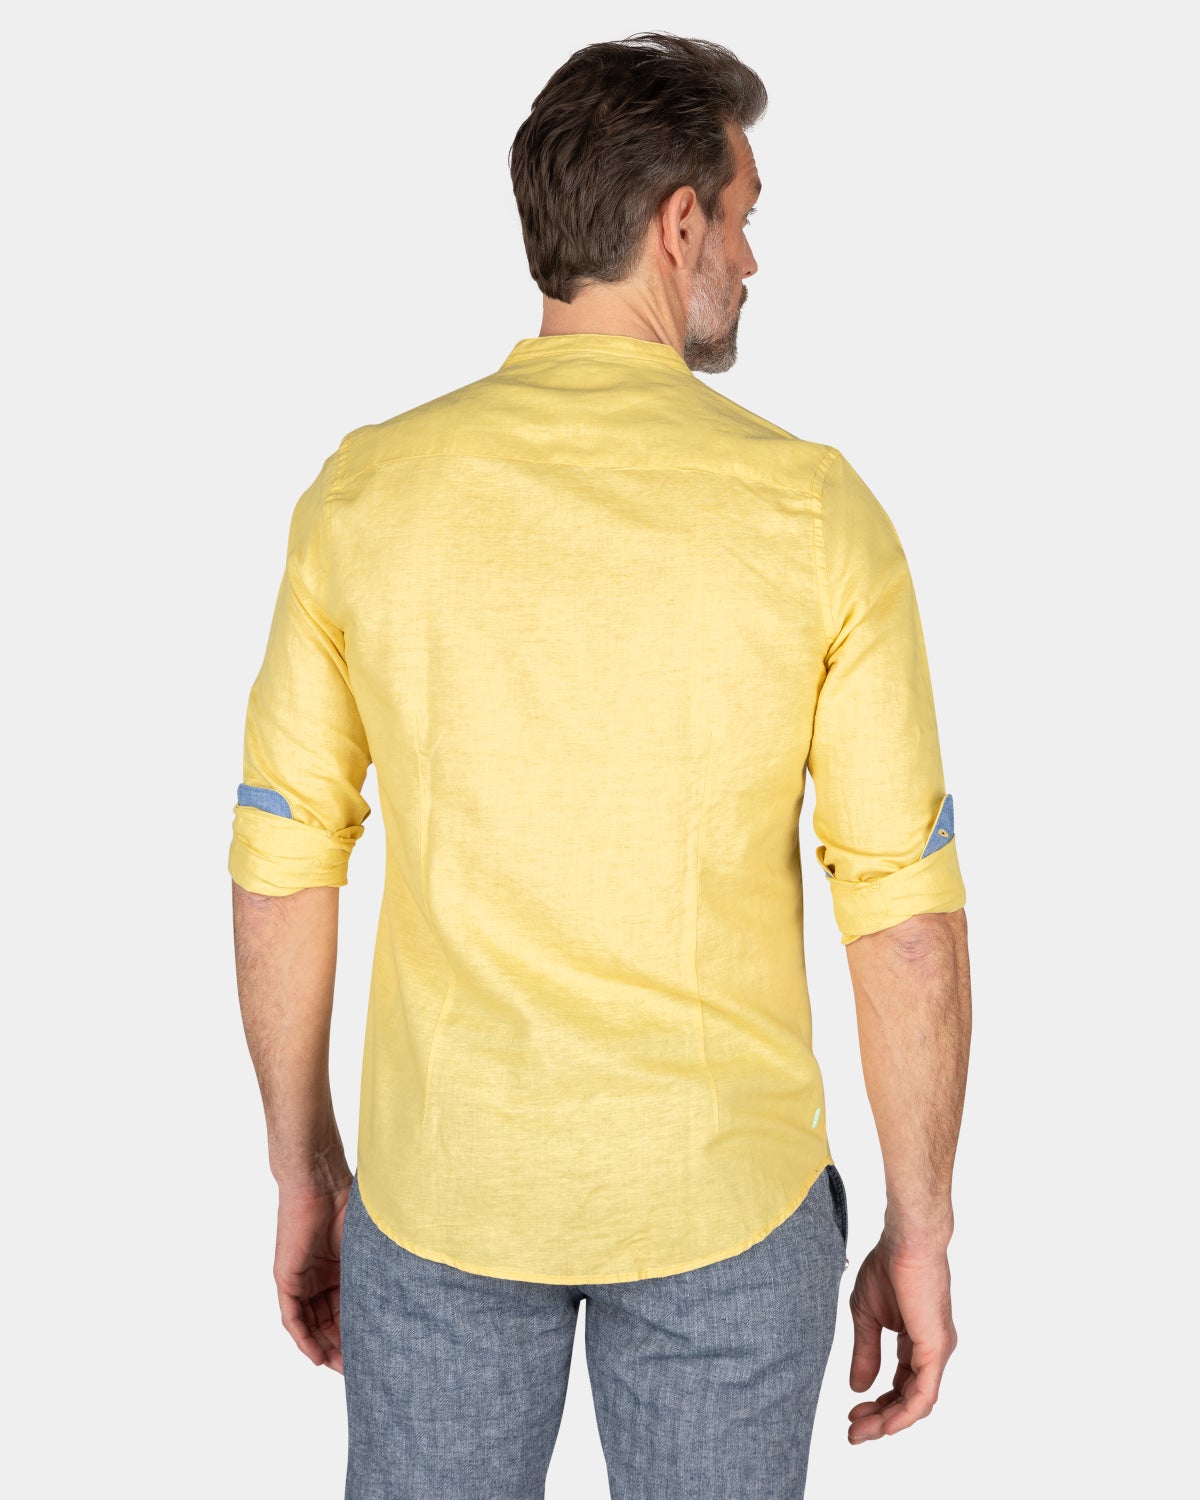 Plain shirt without collar - Iguana Yellow